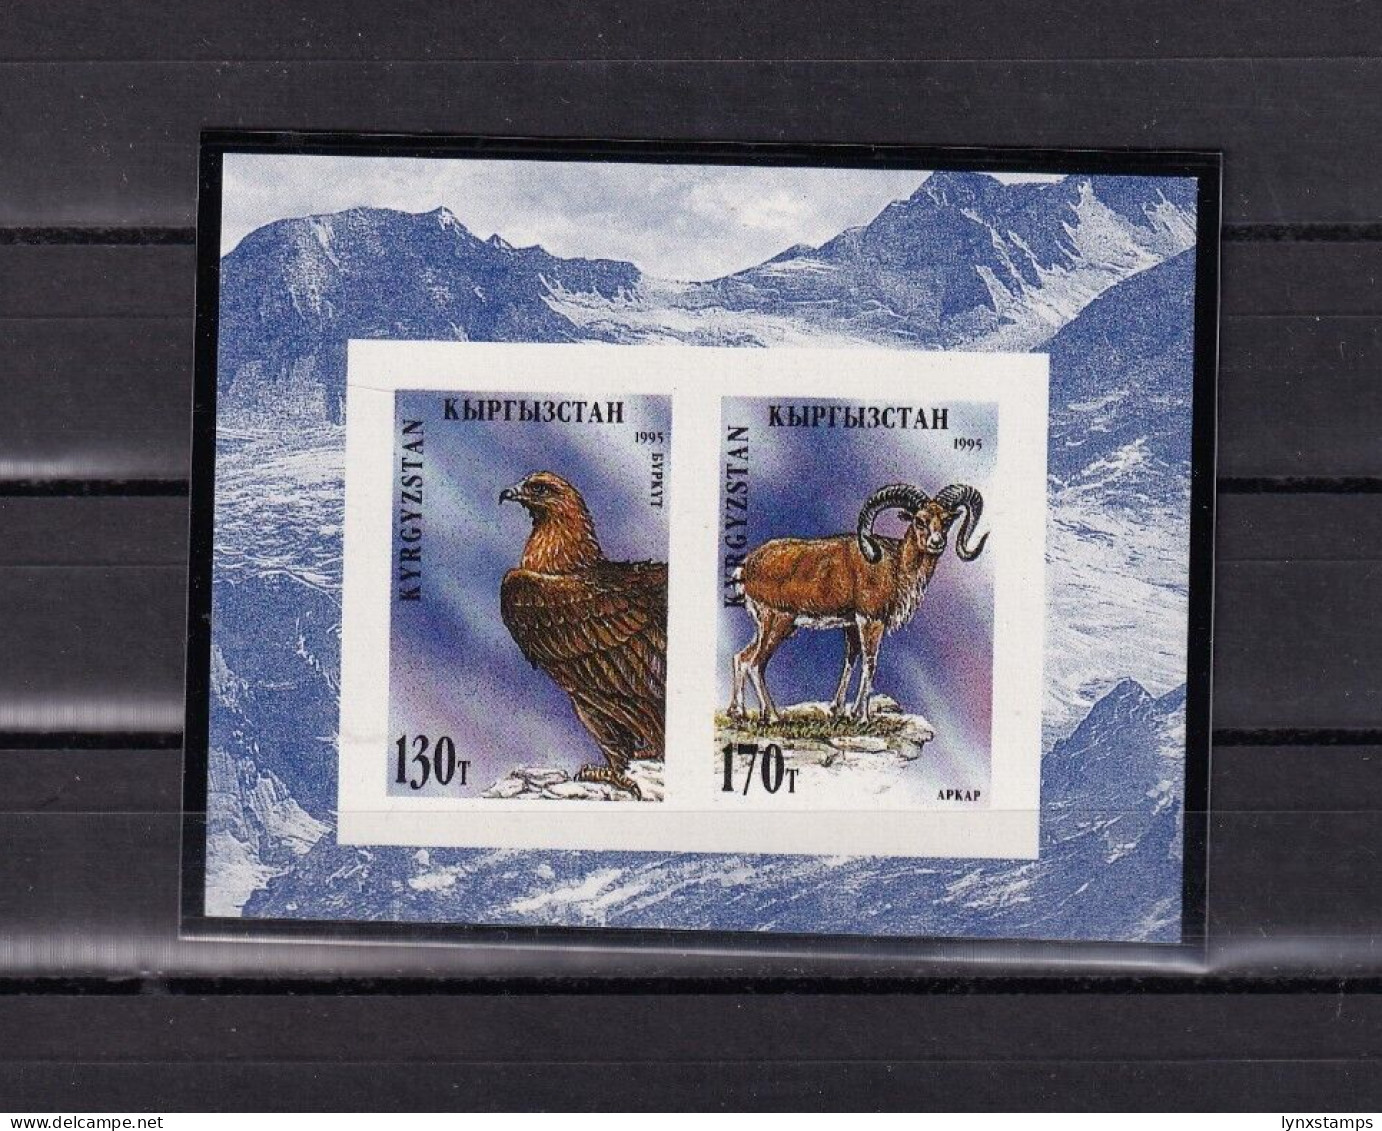 SA01 Kyrgyzstan 1995 Fauna Of Kyrgyzstan Imperforated Mini Sheet Mint - Kirgisistan